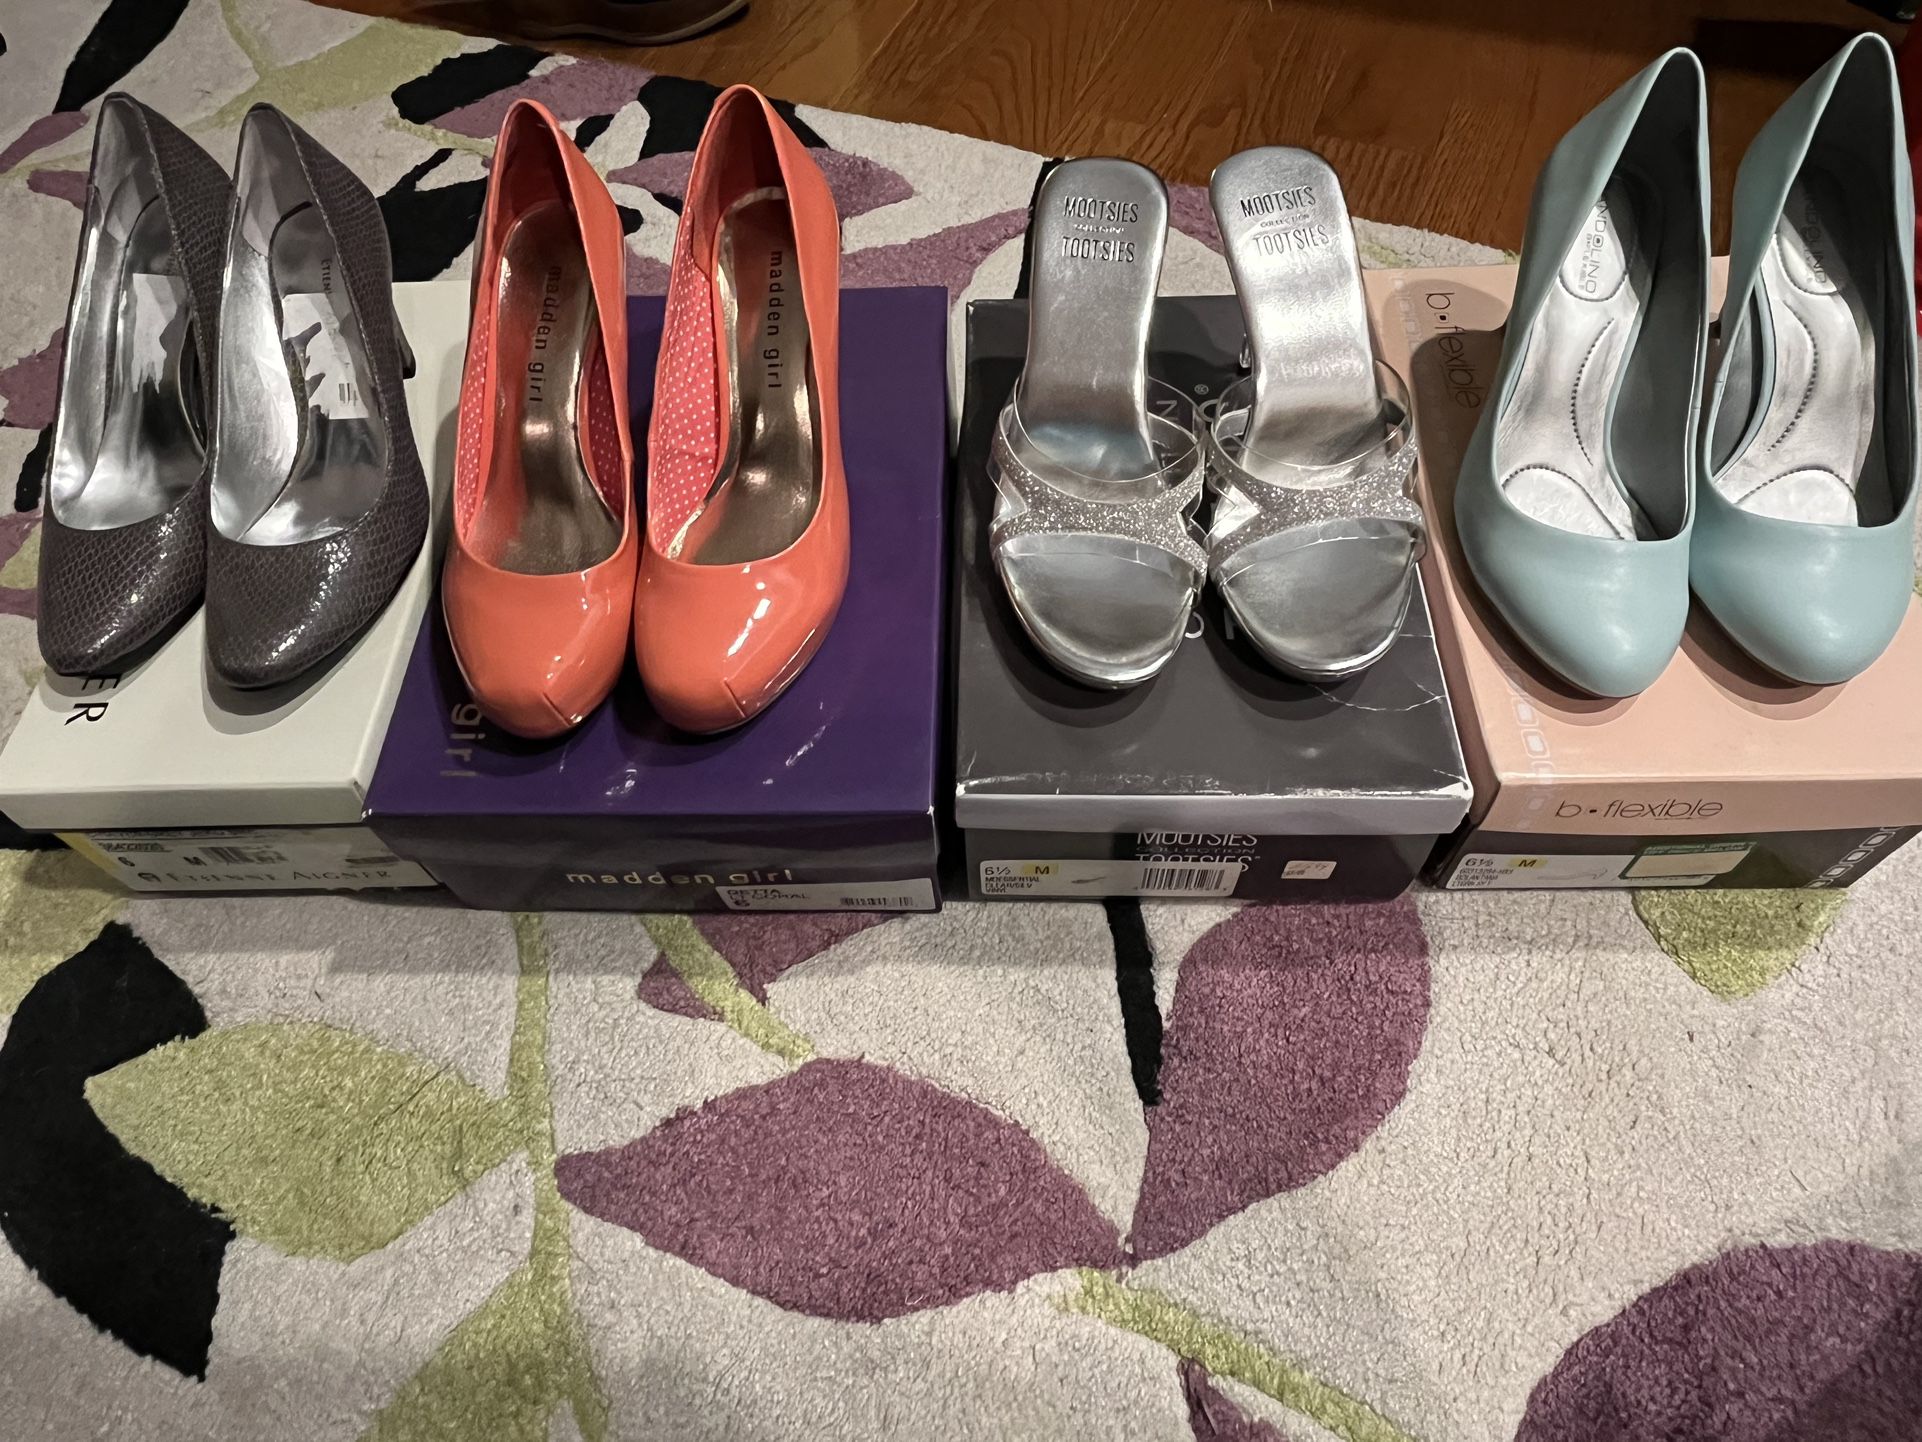 Women’s Shoes - Size 6 & 6.5